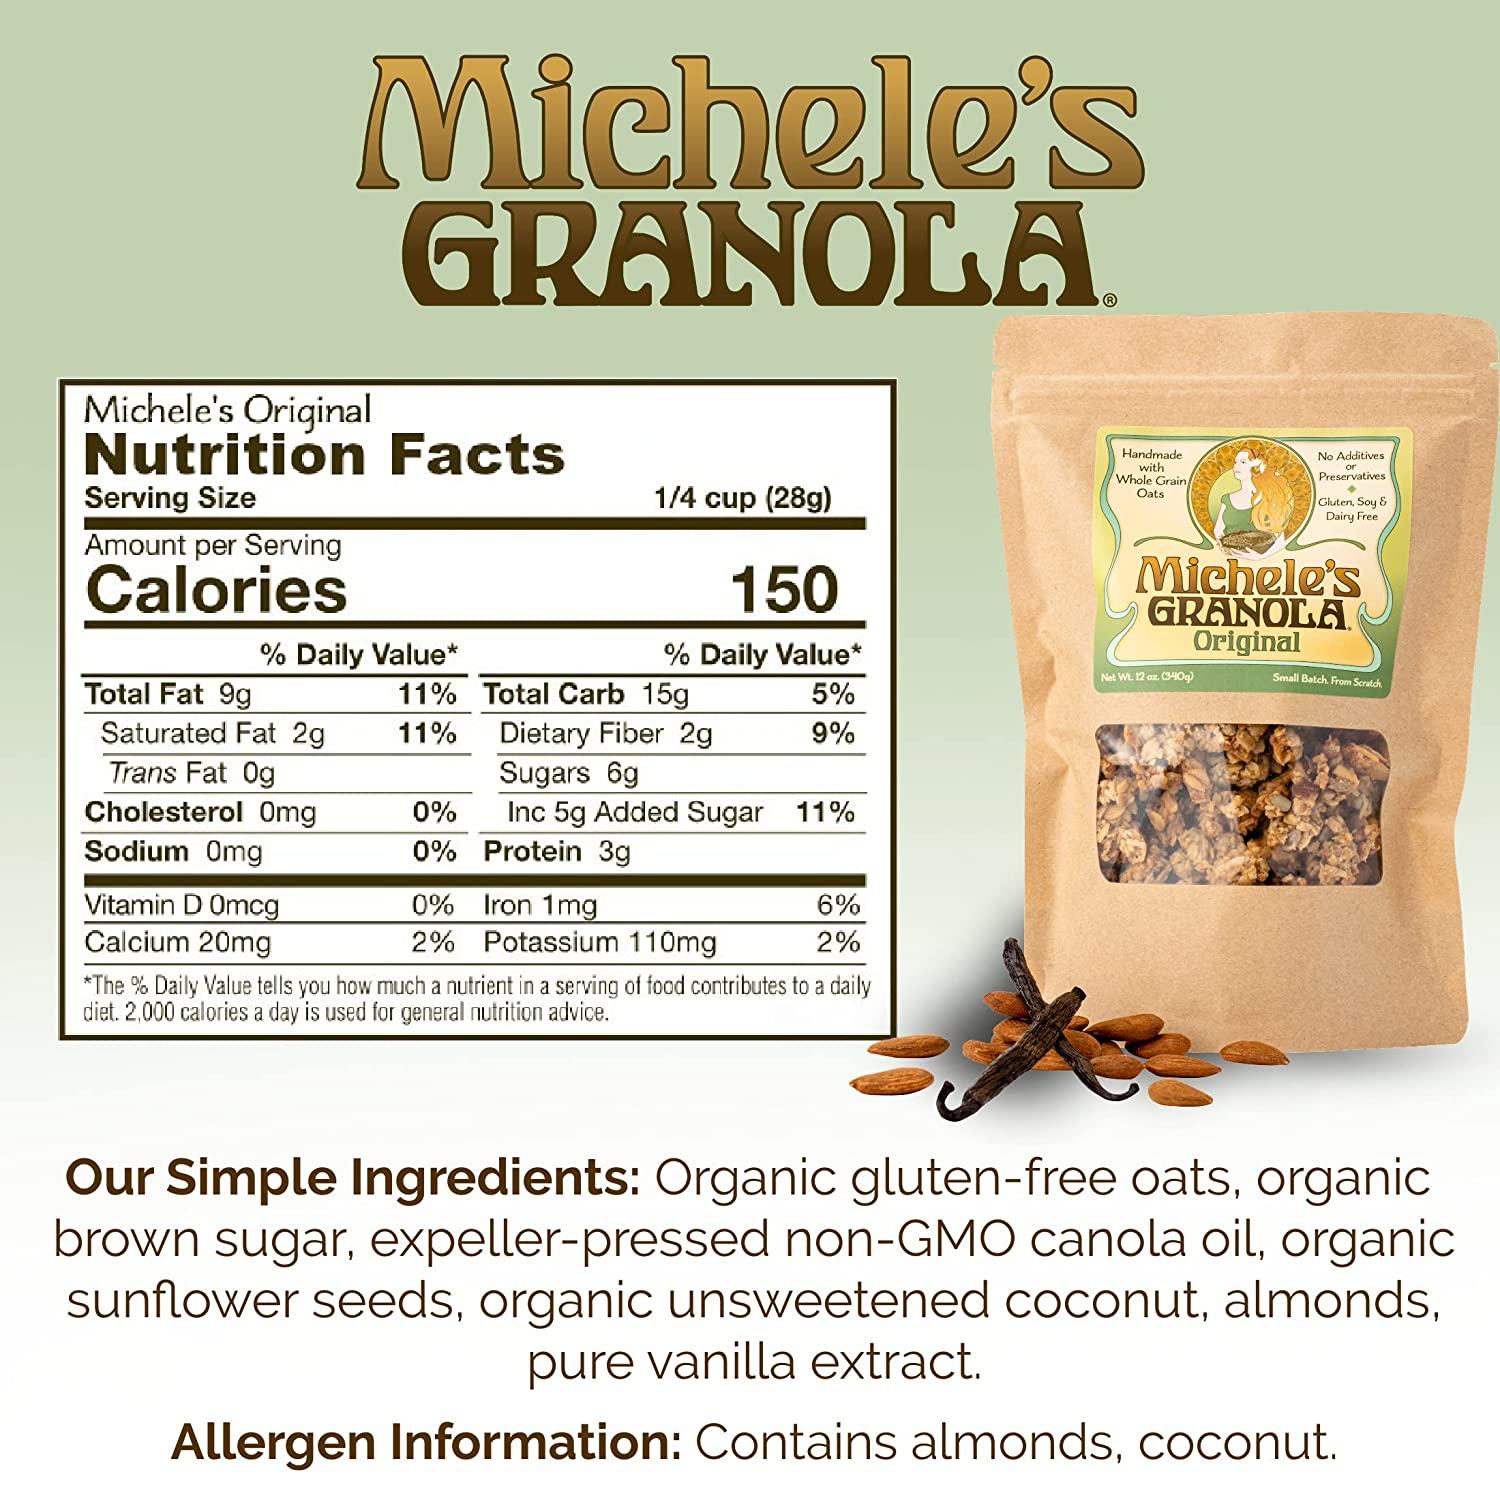 Michele's Granola Muesli, Toasted Muesli, Gluten-Free, No Refined Sugar & Non-GMO, 2.25 lb Bulk Bag